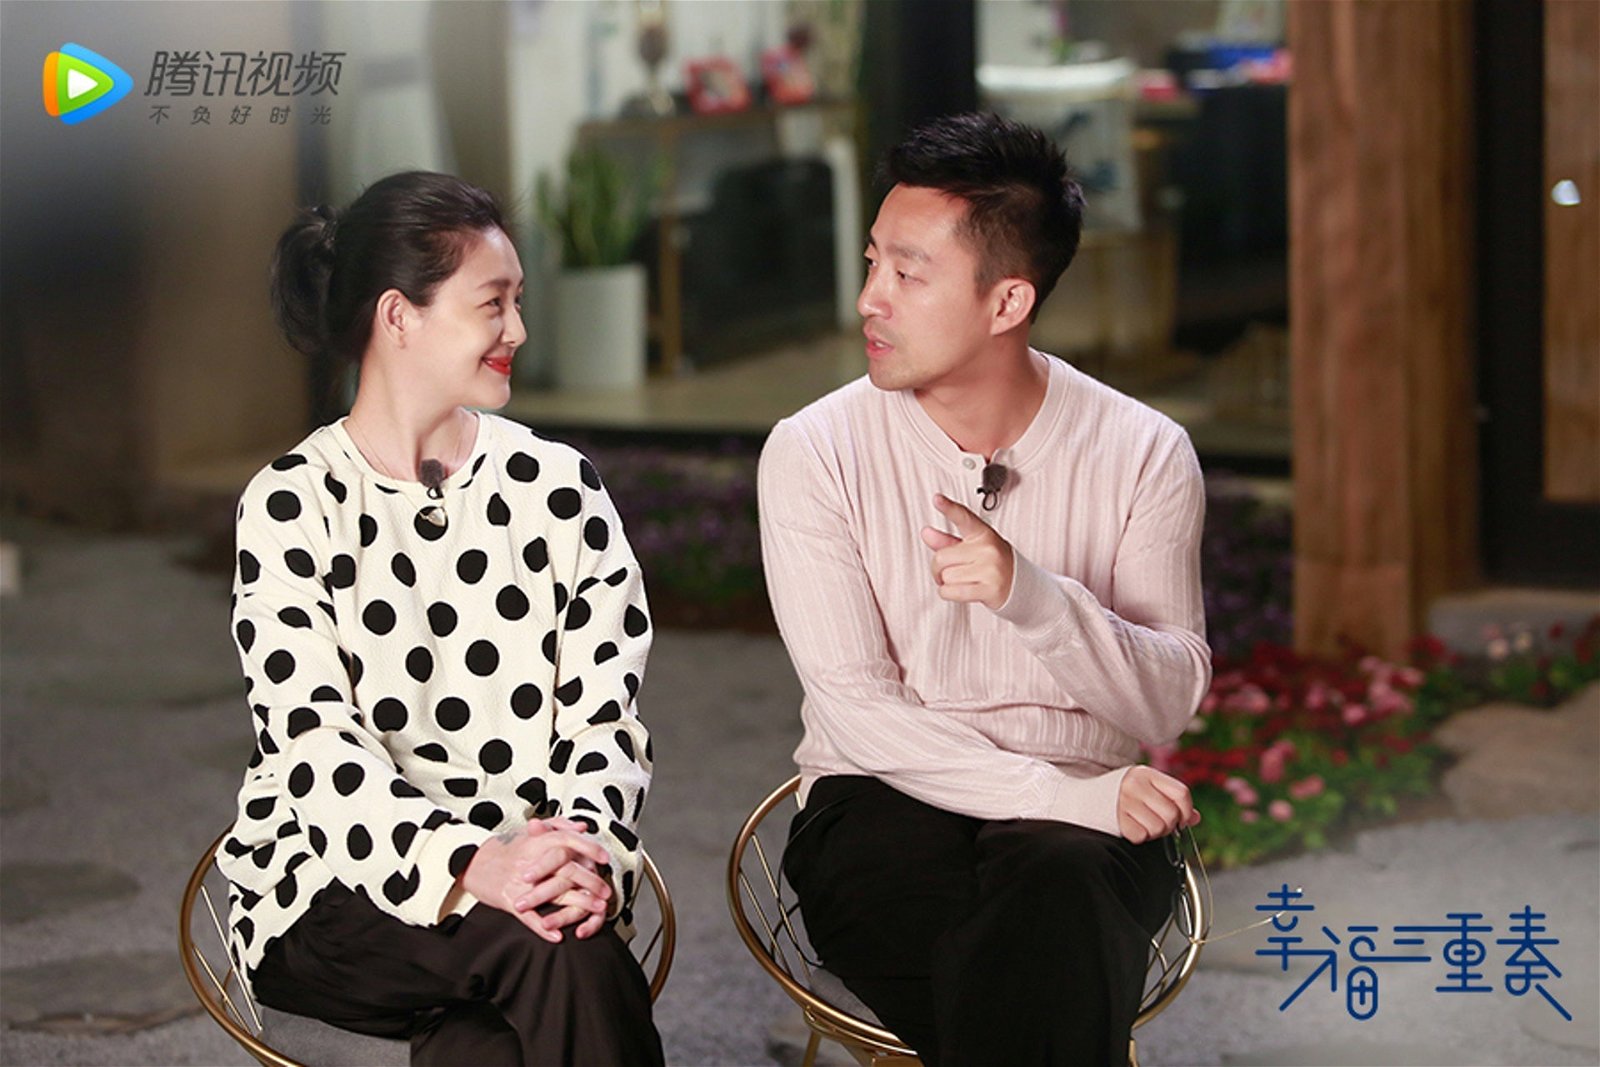 过去大S和汪小菲还曾合体上节目谈夫妻相处之道。